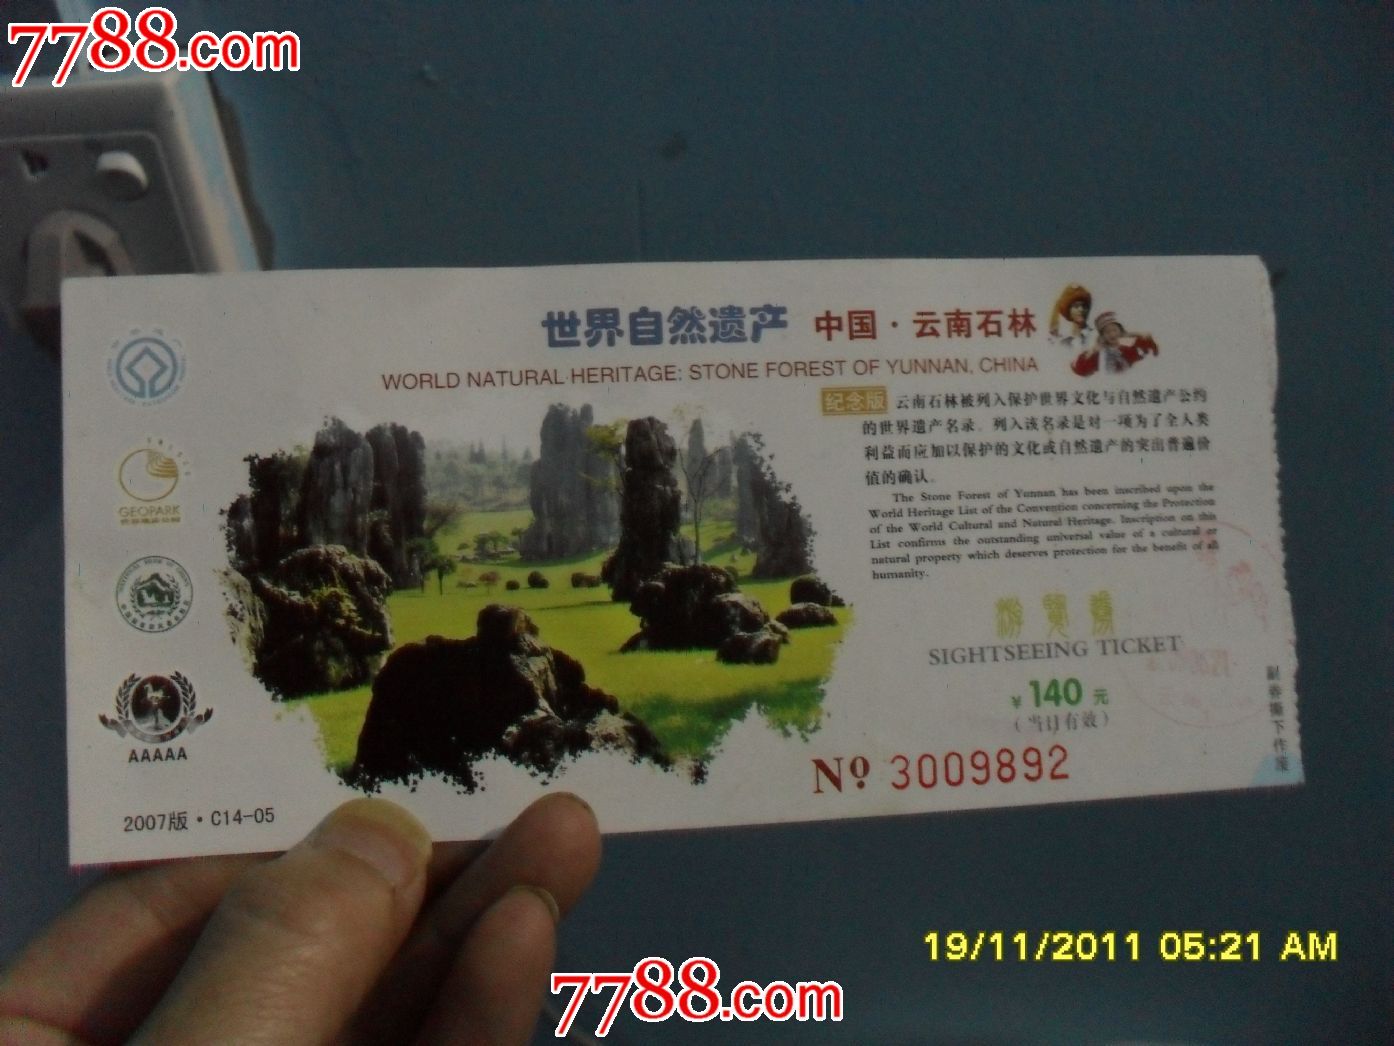 景泰石林景区门票图片